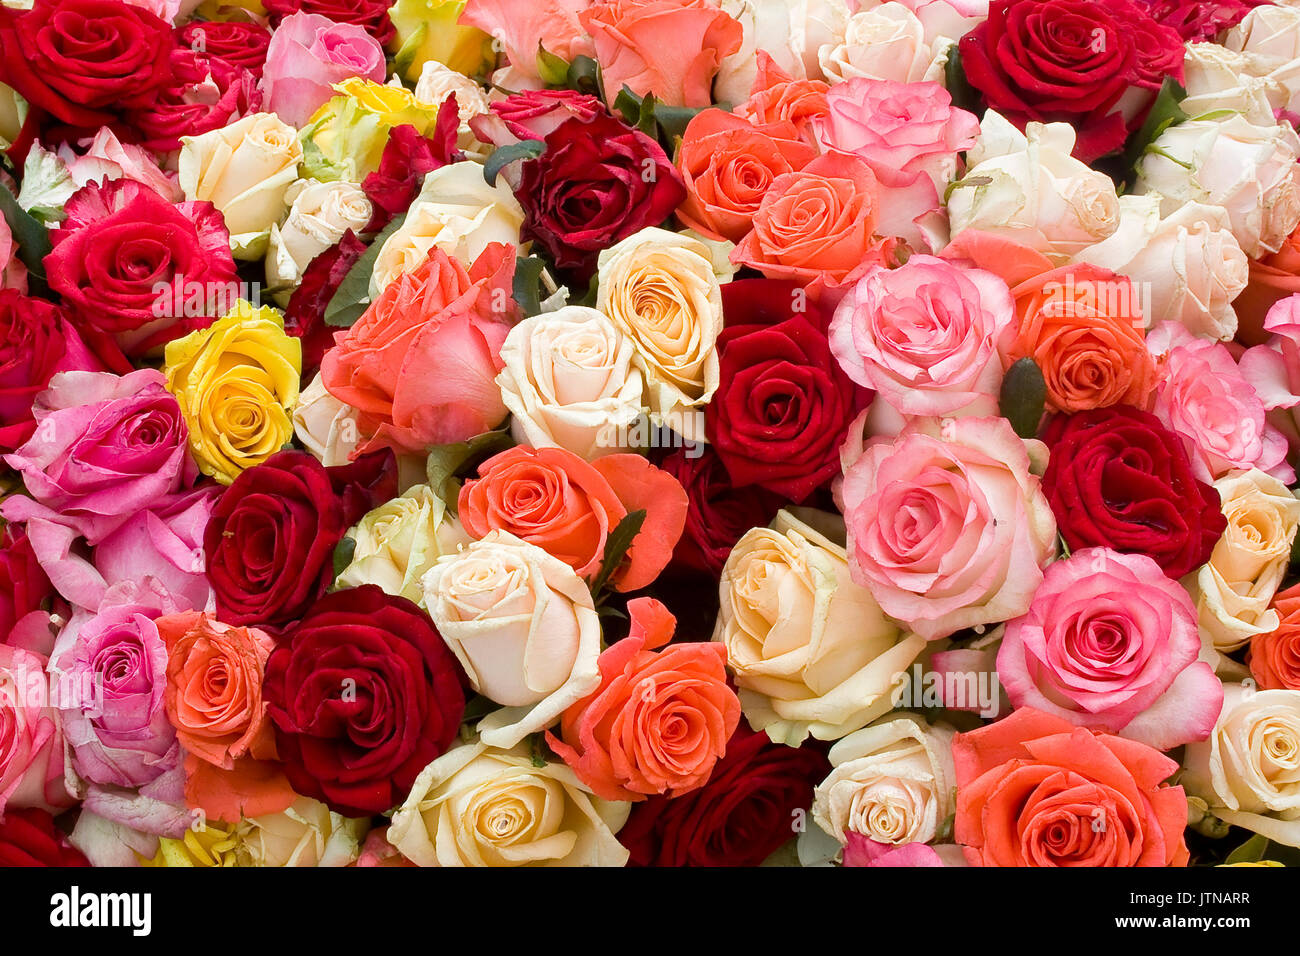 Bunte Rosen Hintergrund. Ein Bündel von bunten Rosen hautnah. Stockfoto